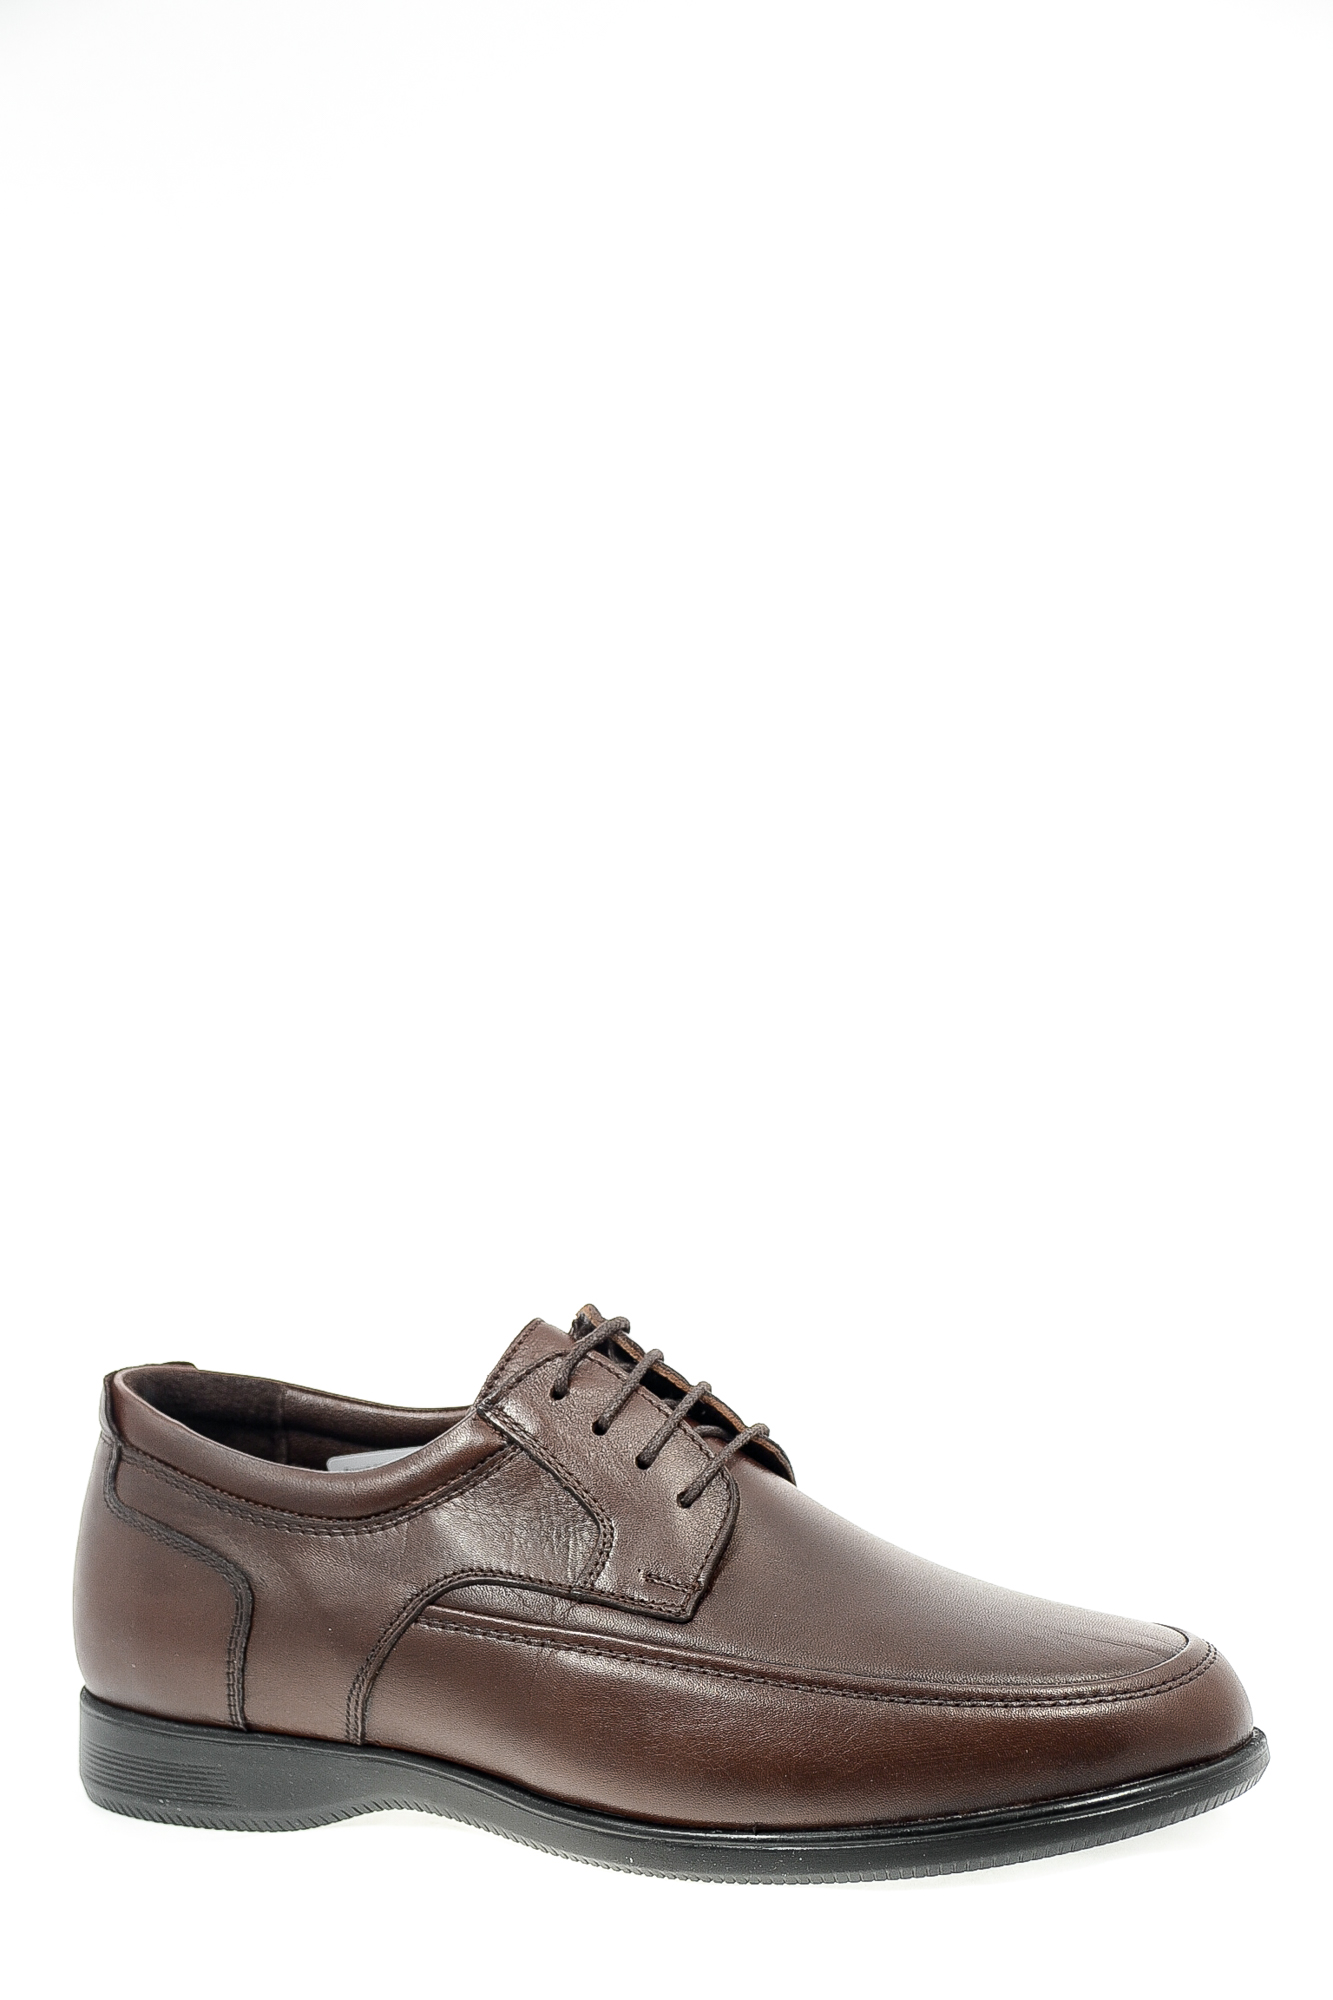 Туфли натуральная кожа Egardi Egardi 005-15442 кор цвет коричневый.